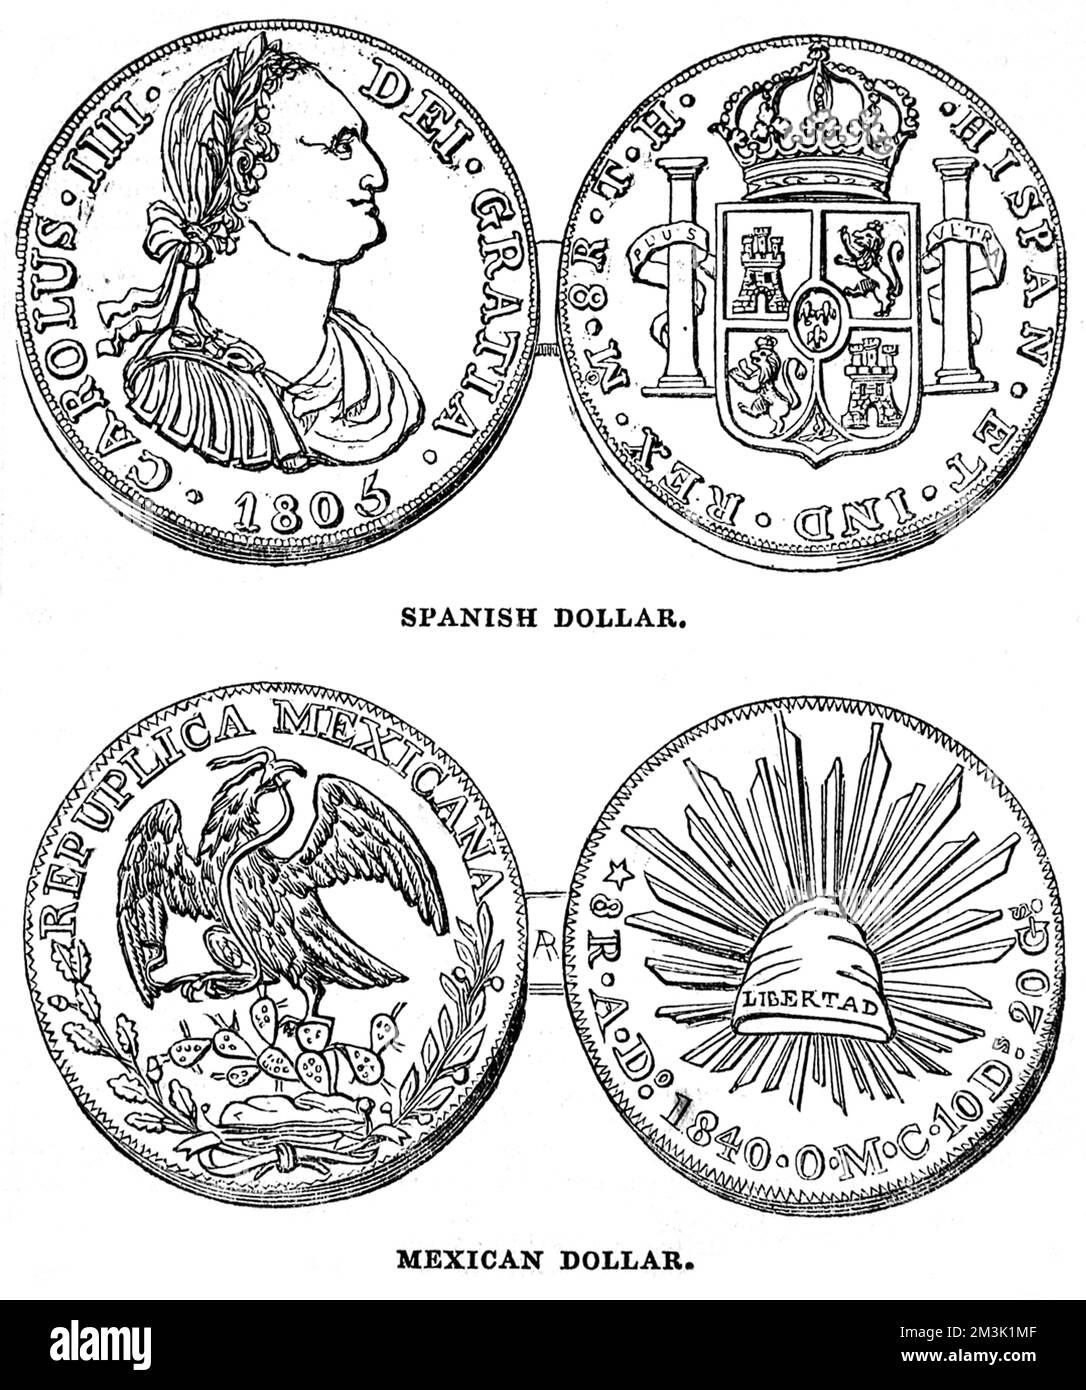 Münze in den Gewölben der Bank von England. Anfang des 19. Jahrhunderts spanische und mexikanische Dollar, der spanier ist bekannt als der Pfeiler von Karl IV., der Mexikaner ist bekannt als der Adlerdollar. 1845 Stockfoto